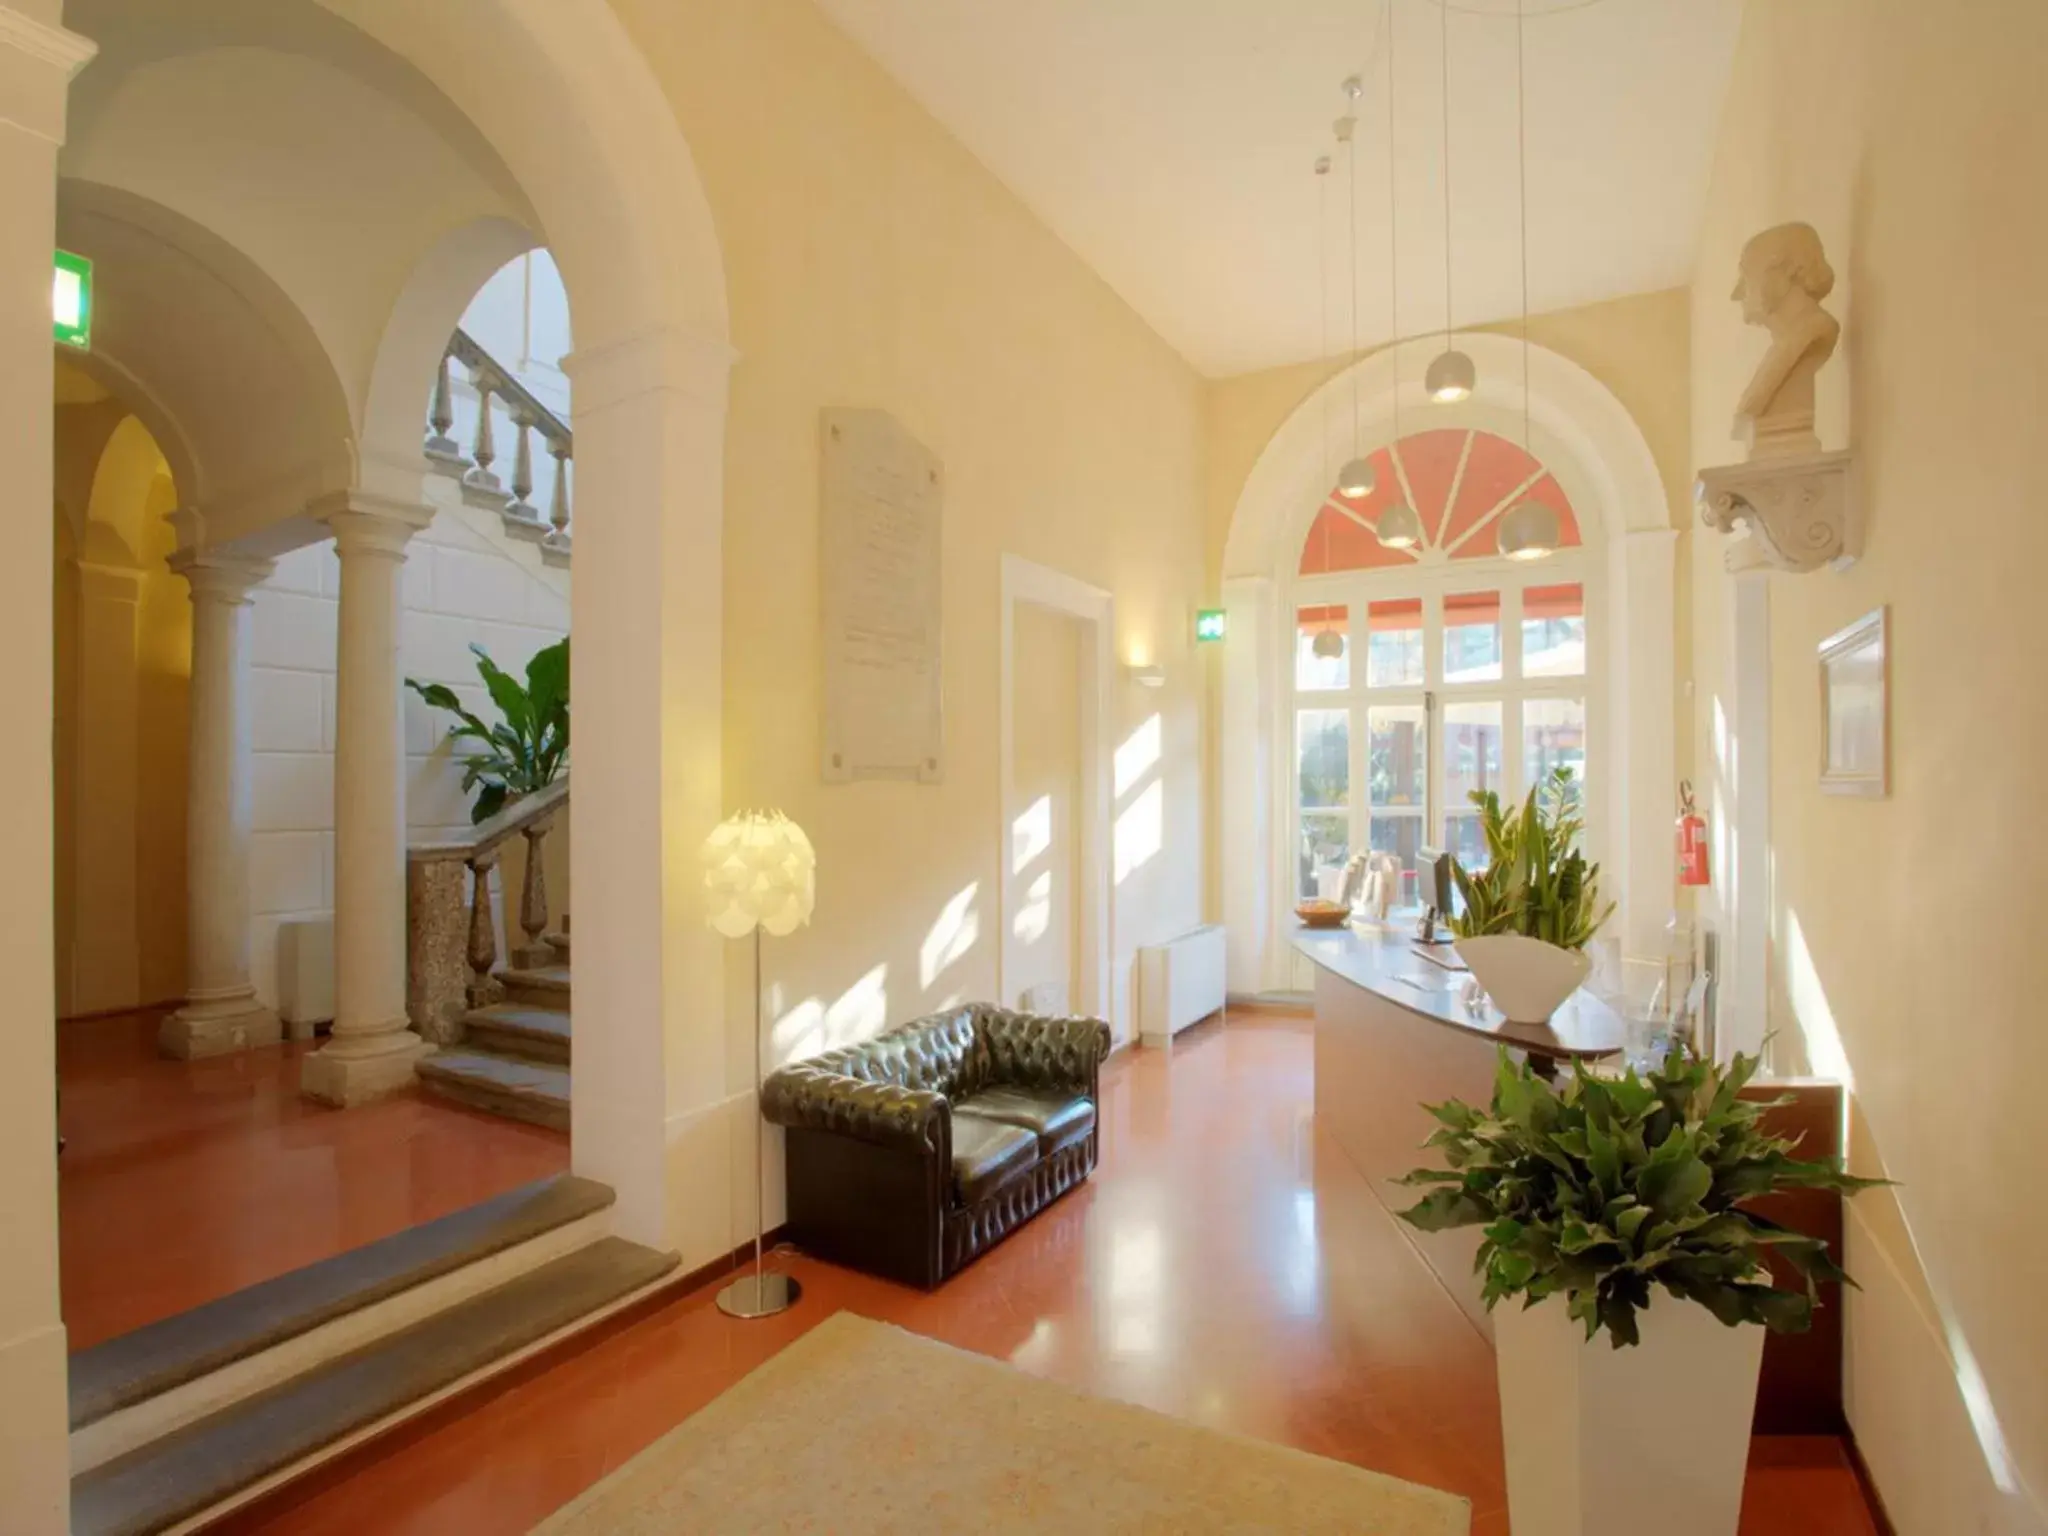 Lobby or reception in Palazzo Galletti Abbiosi